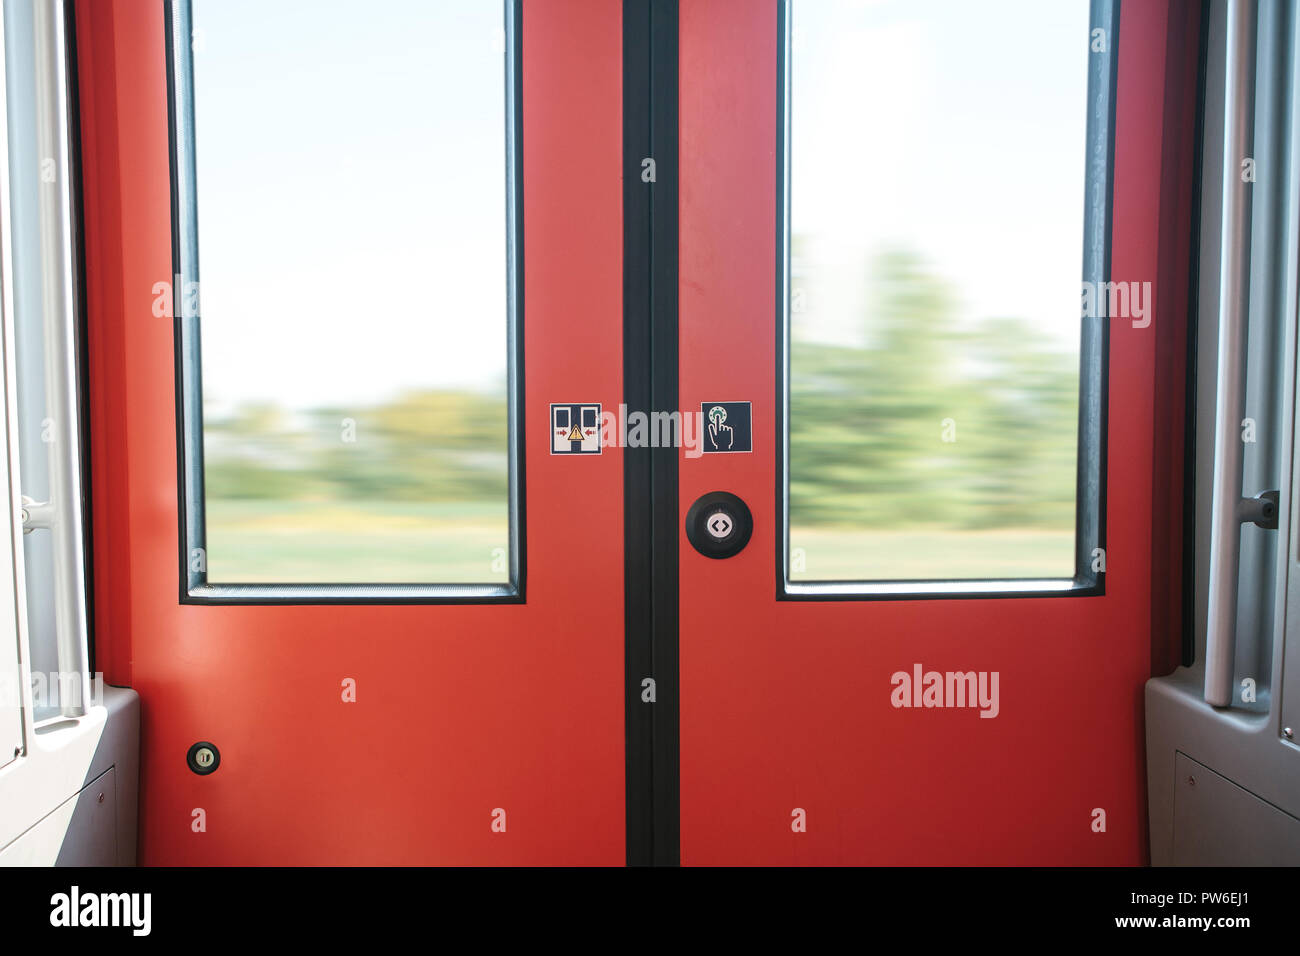 La porte de sortie du train, avec un bouton pour ouvrir automatiquement la porte à la demande lorsque le train s'arrête. Banque D'Images